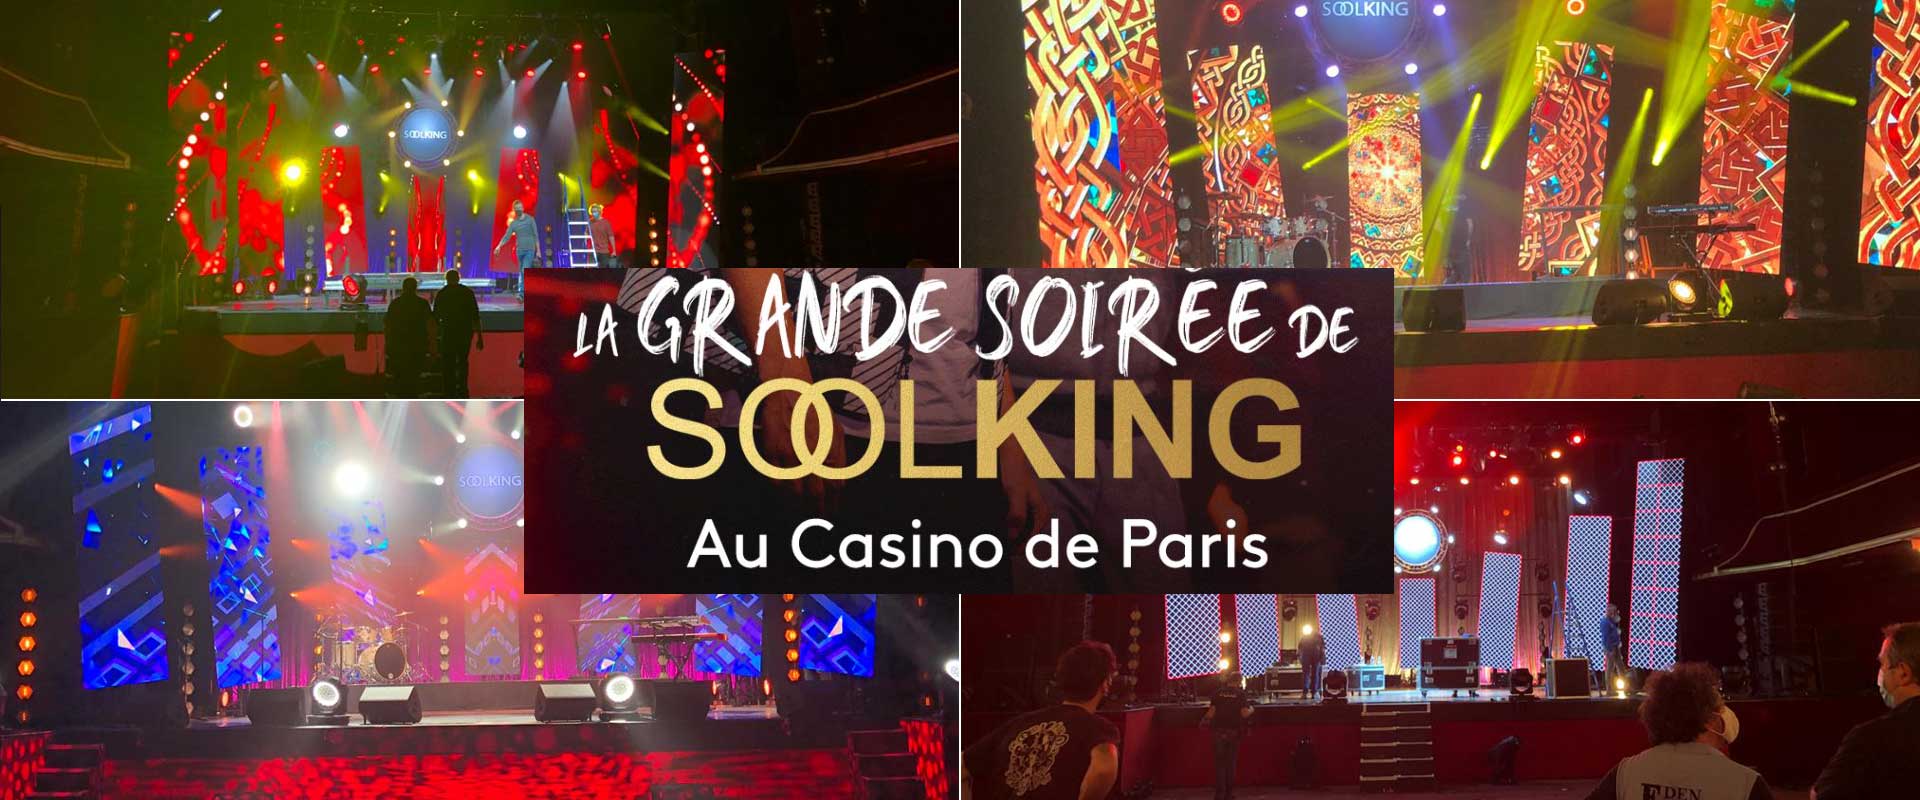 Visuel POTAR présent à La grande soirée de Soolking sur France 2